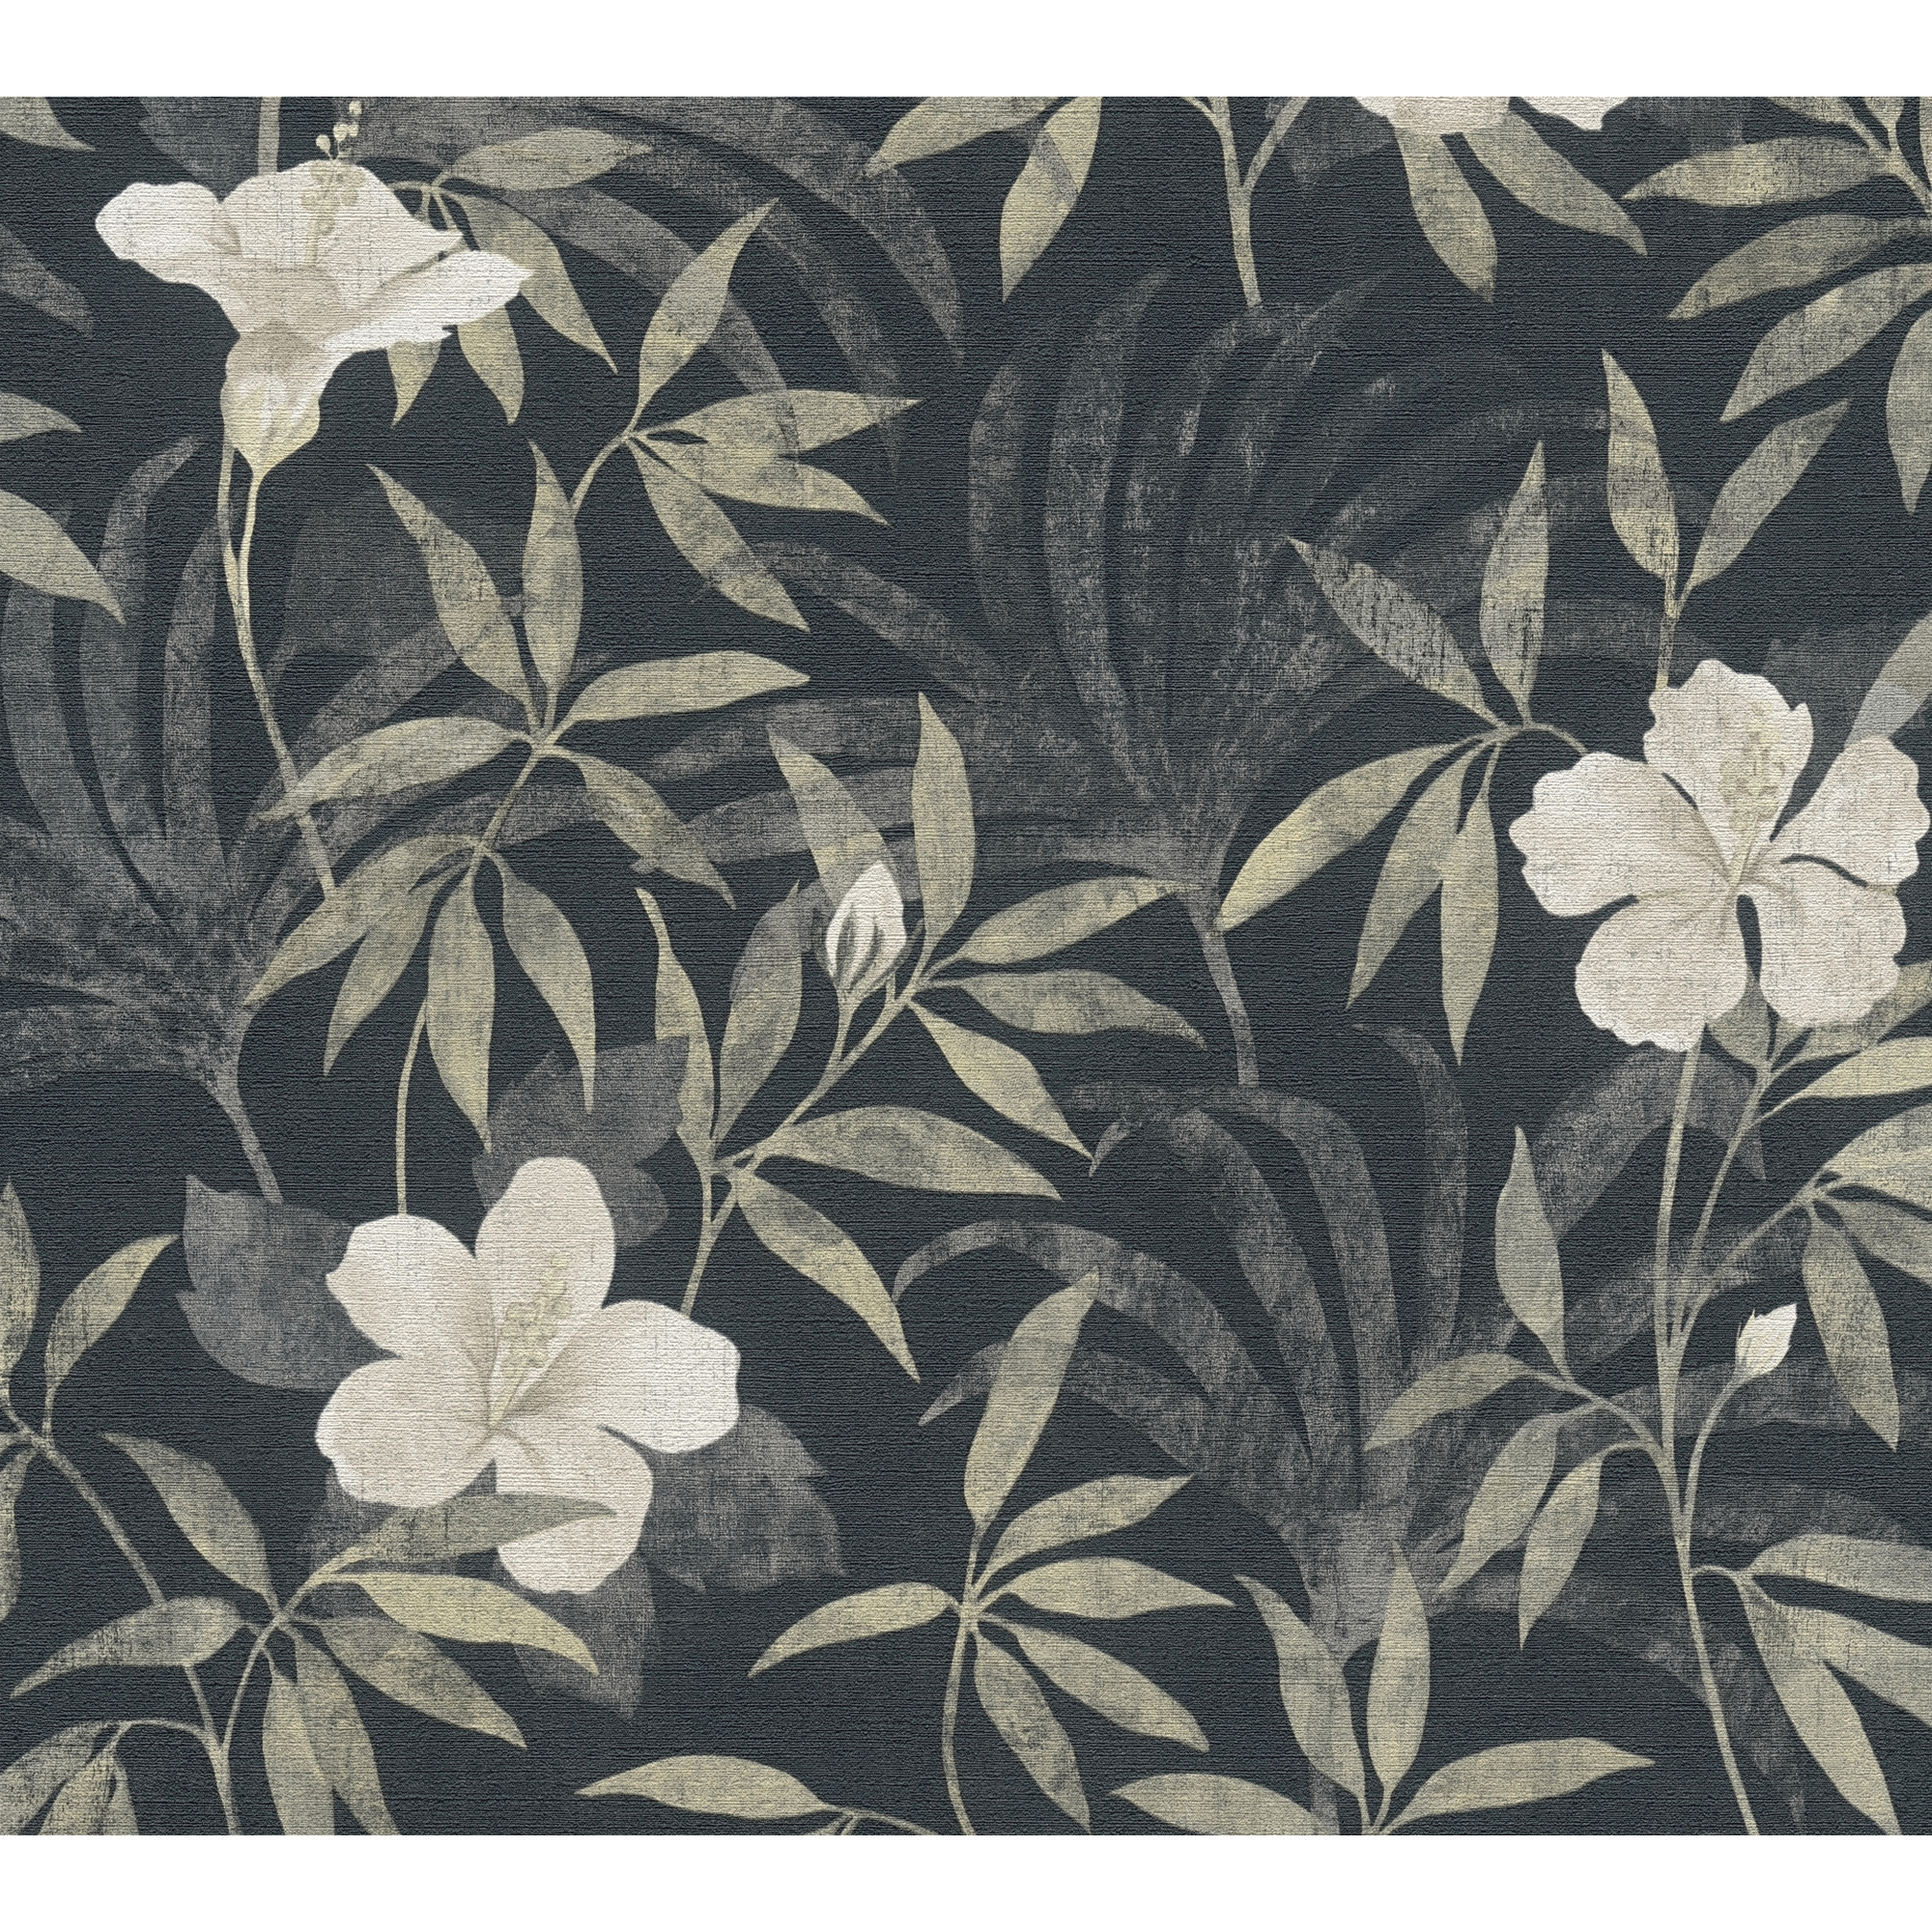 Vliestapete 'Cuba' Blätter, Blüten braun/grau 10,05 x 0,53 m + product picture